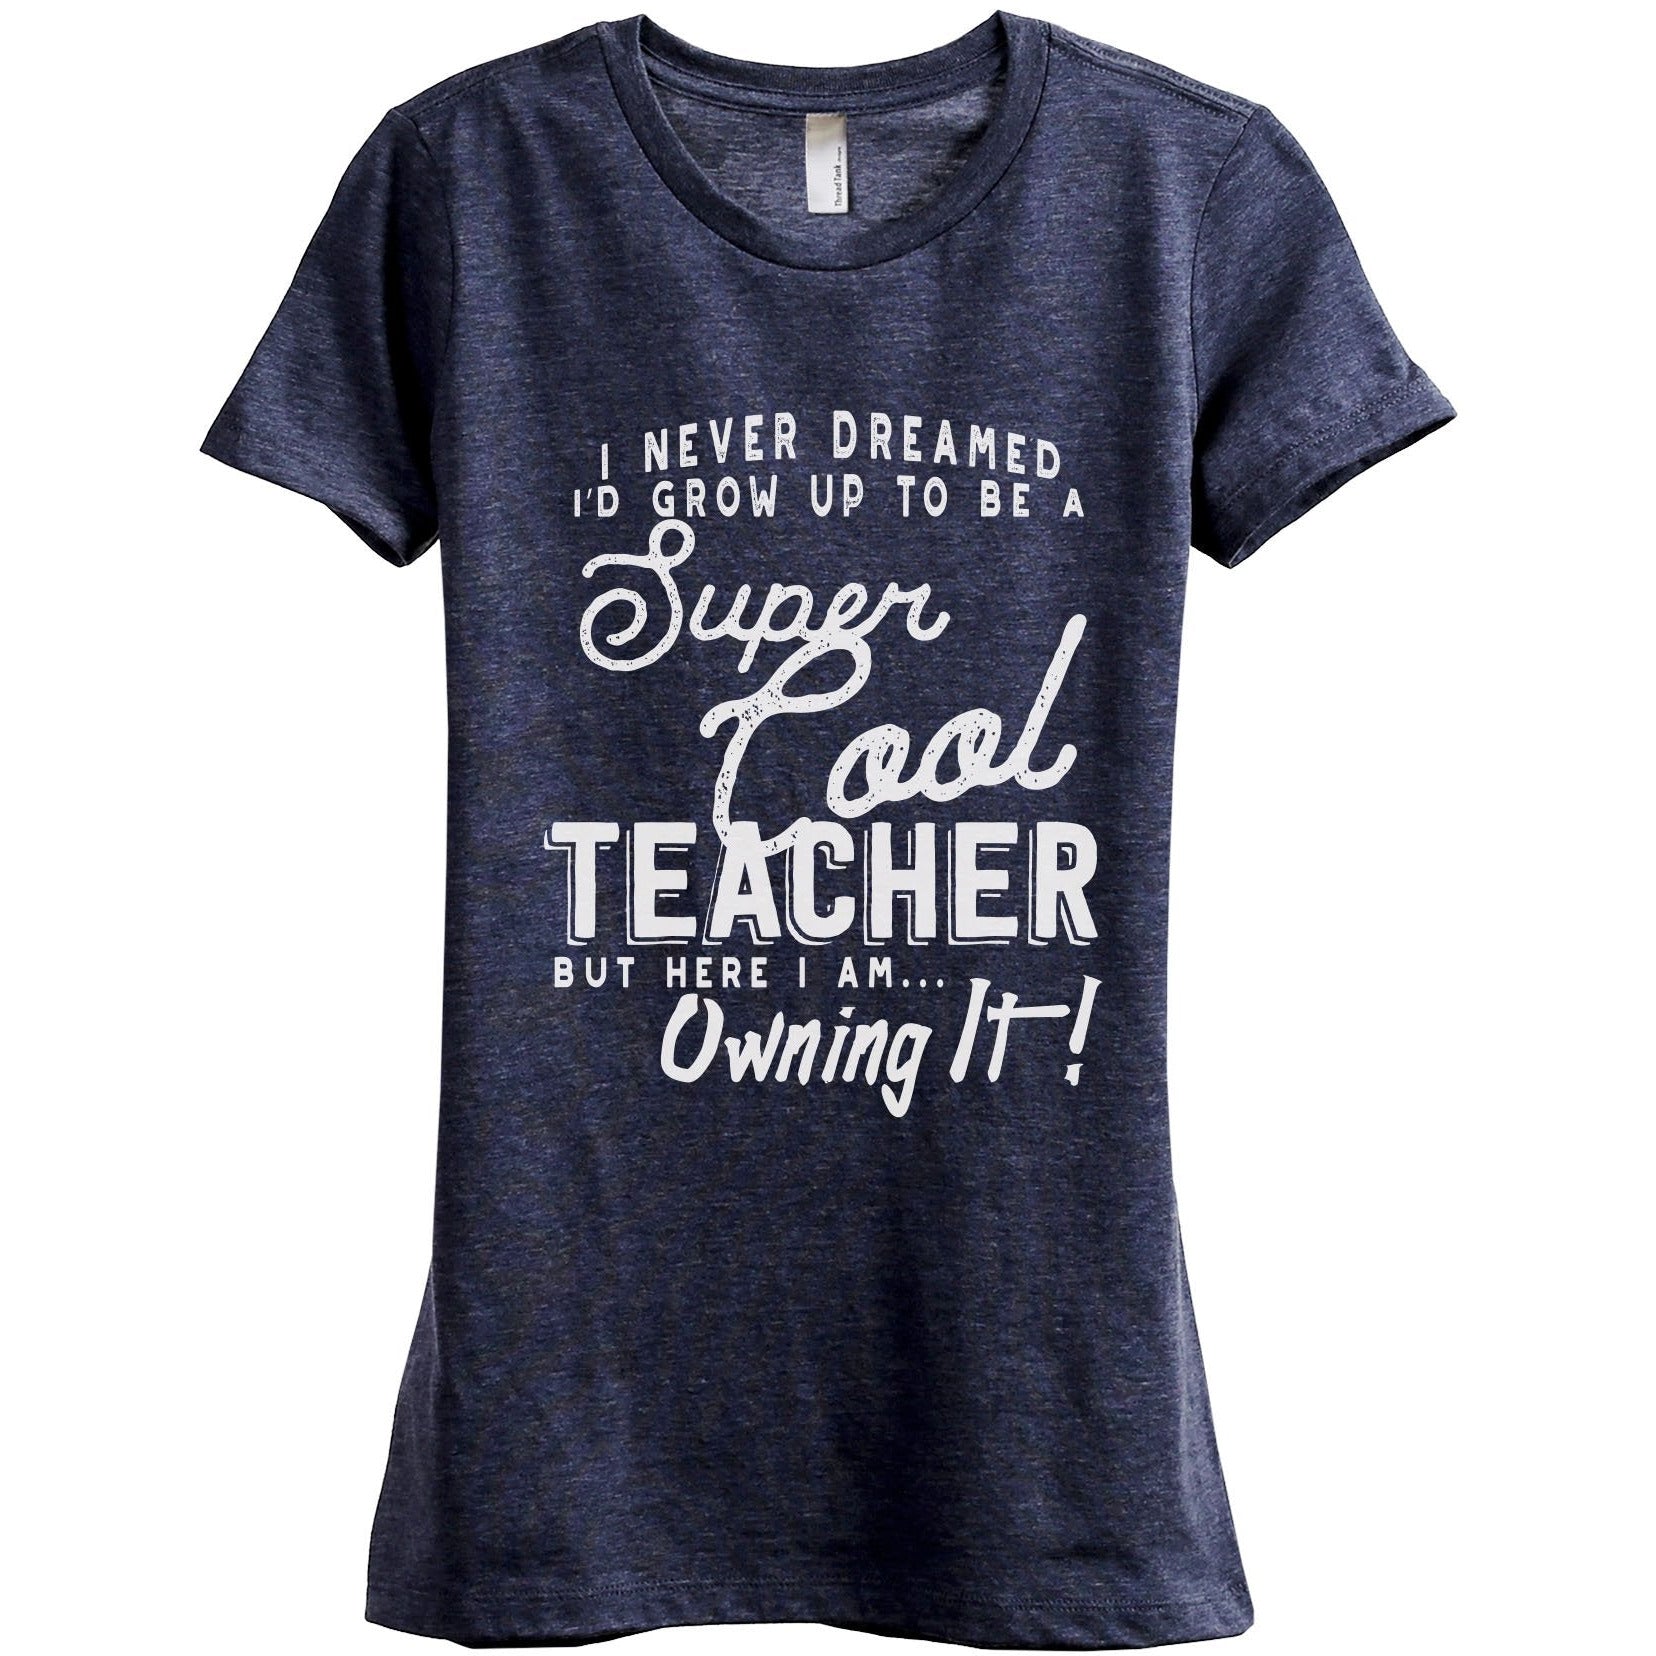 Super Cool Teacher - Stories You Can Wear